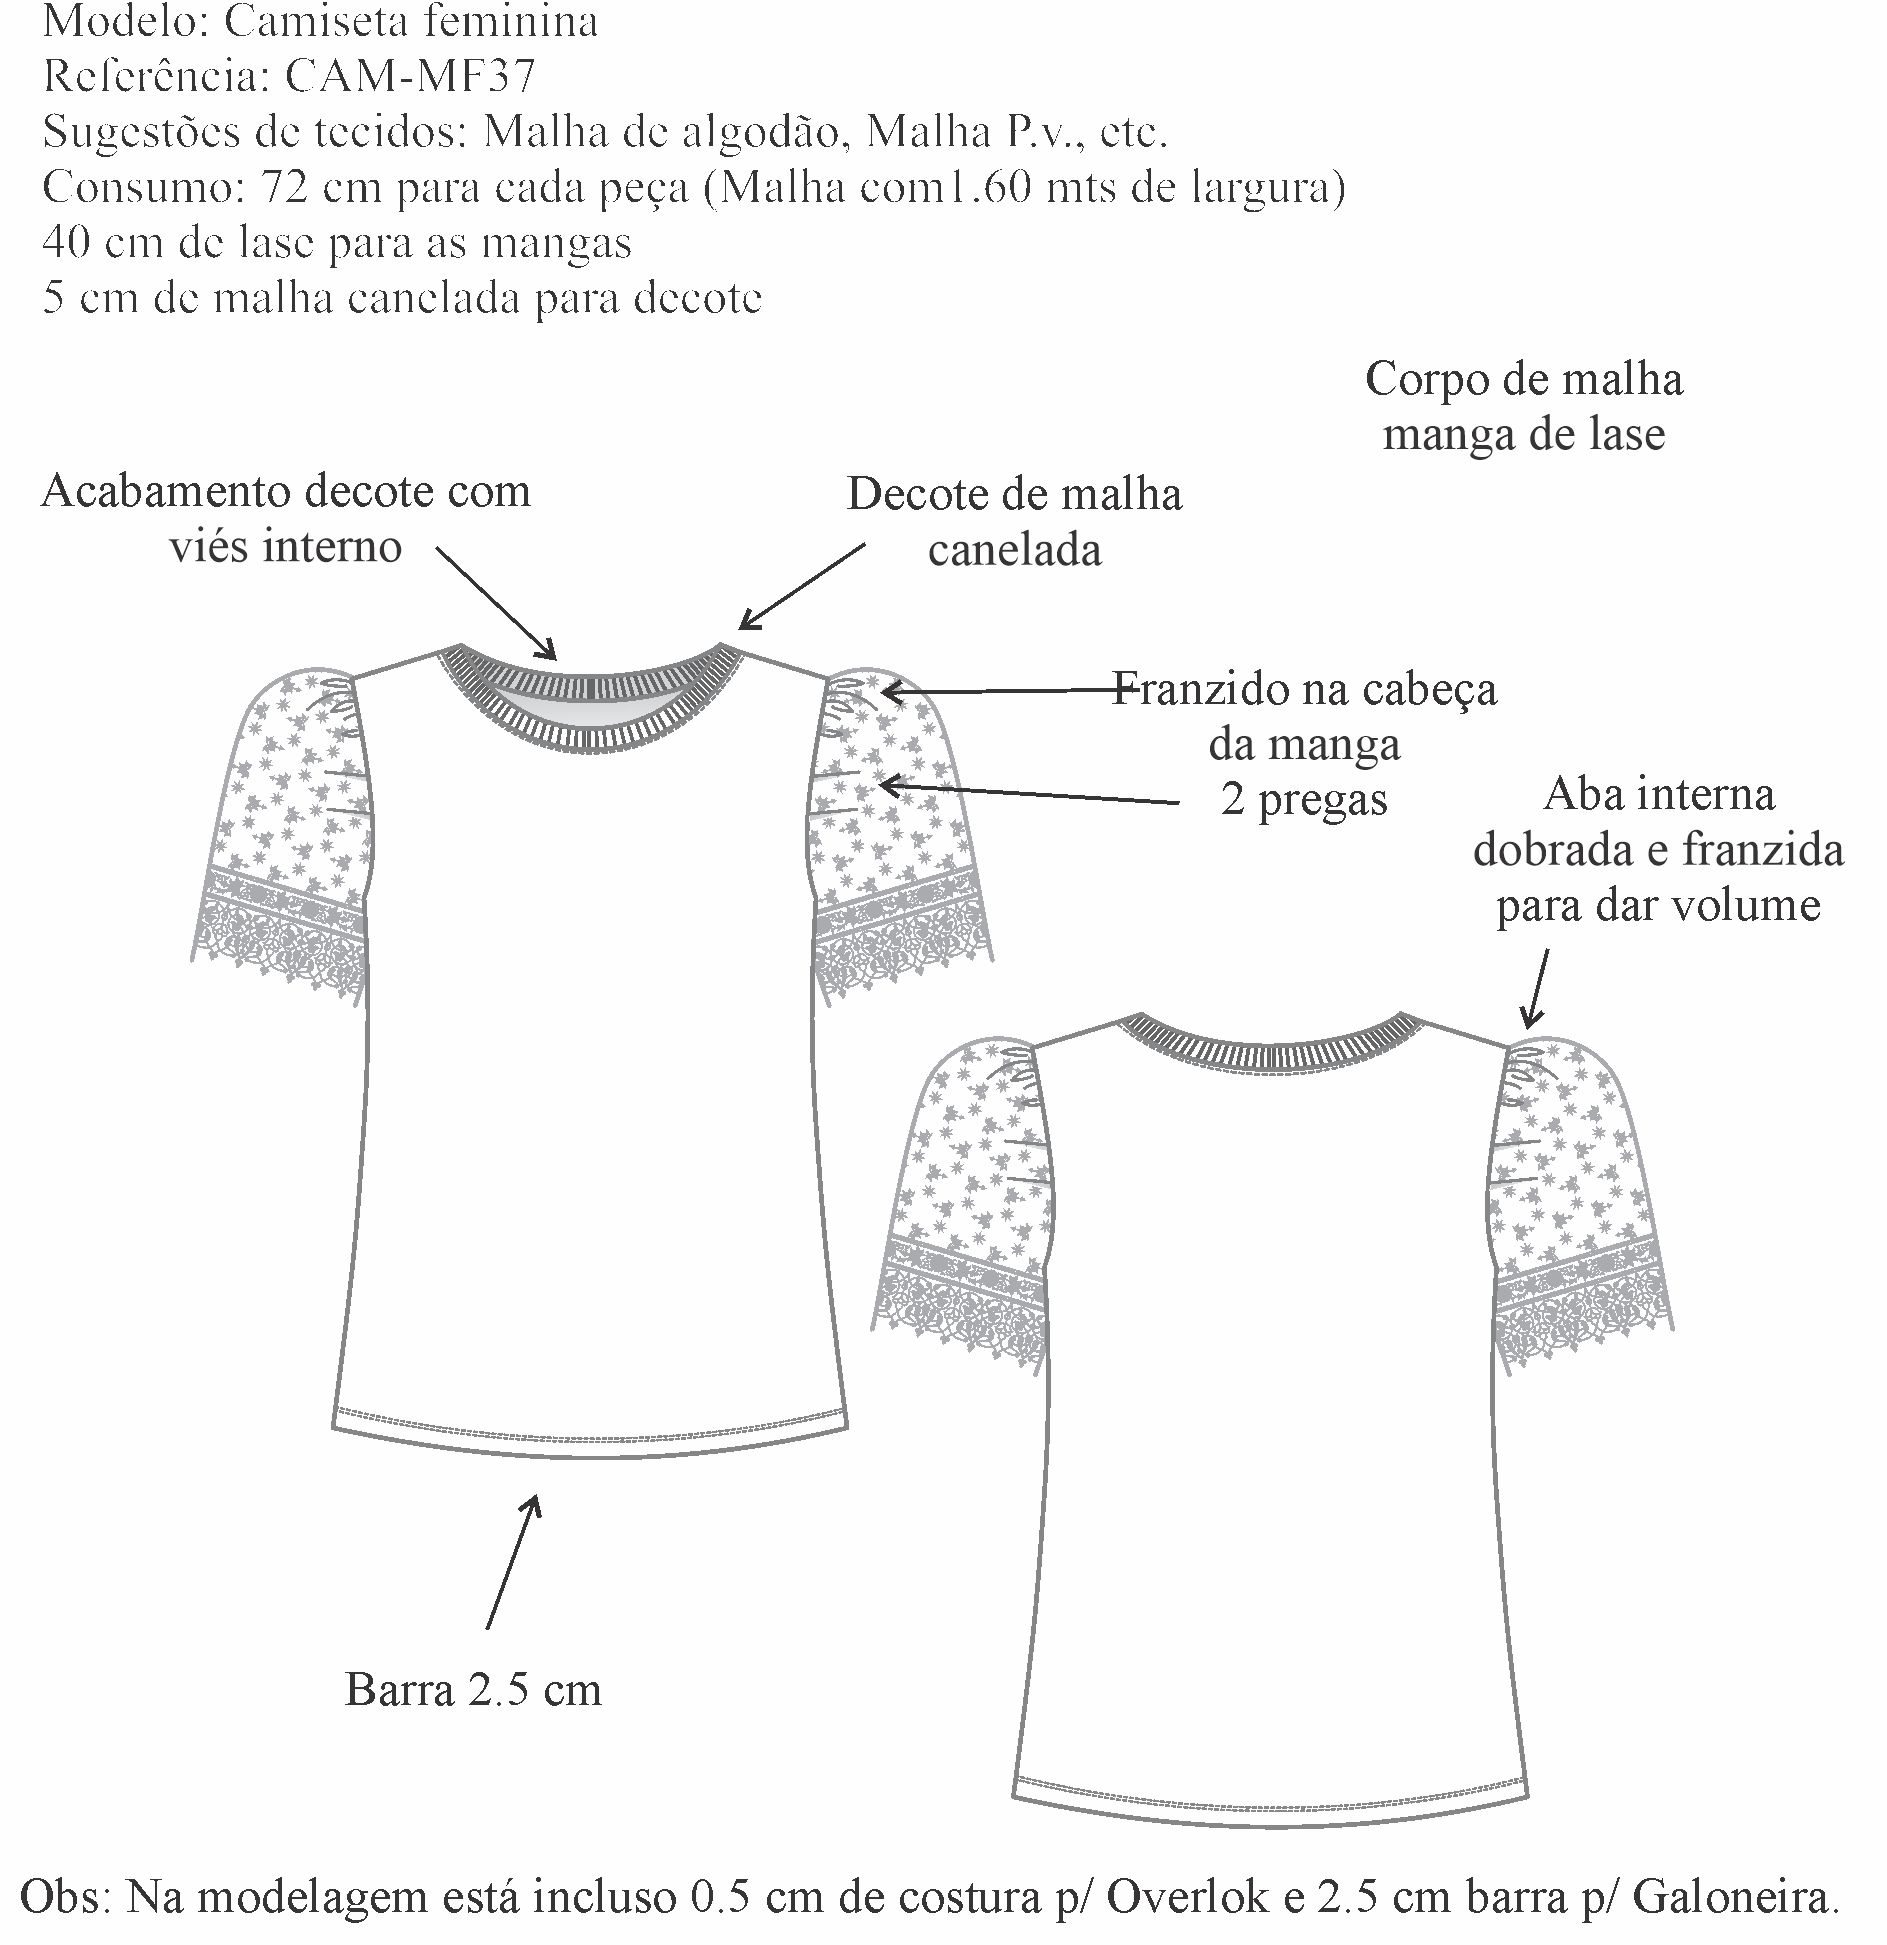 Camiseta feminina (CAM-MF37) - Foto 1